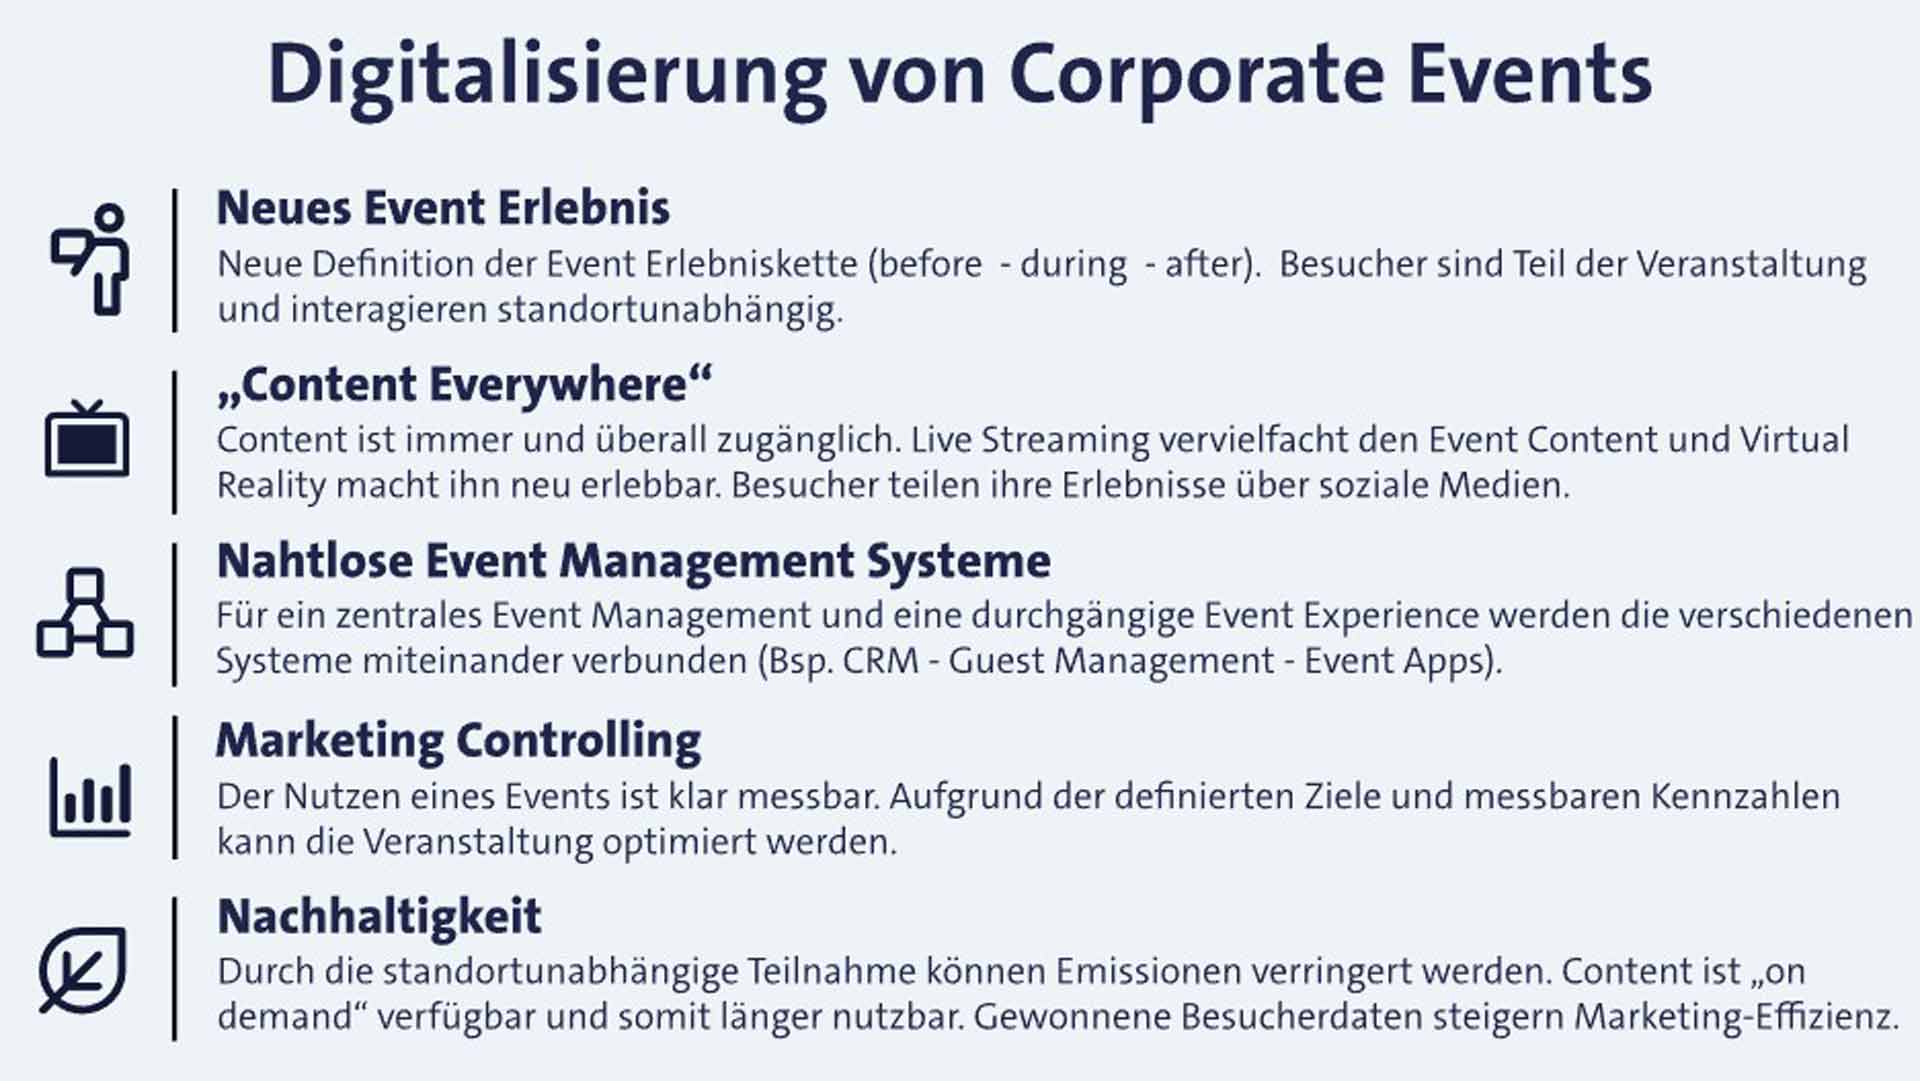 Digitalisierung von Corporate Events